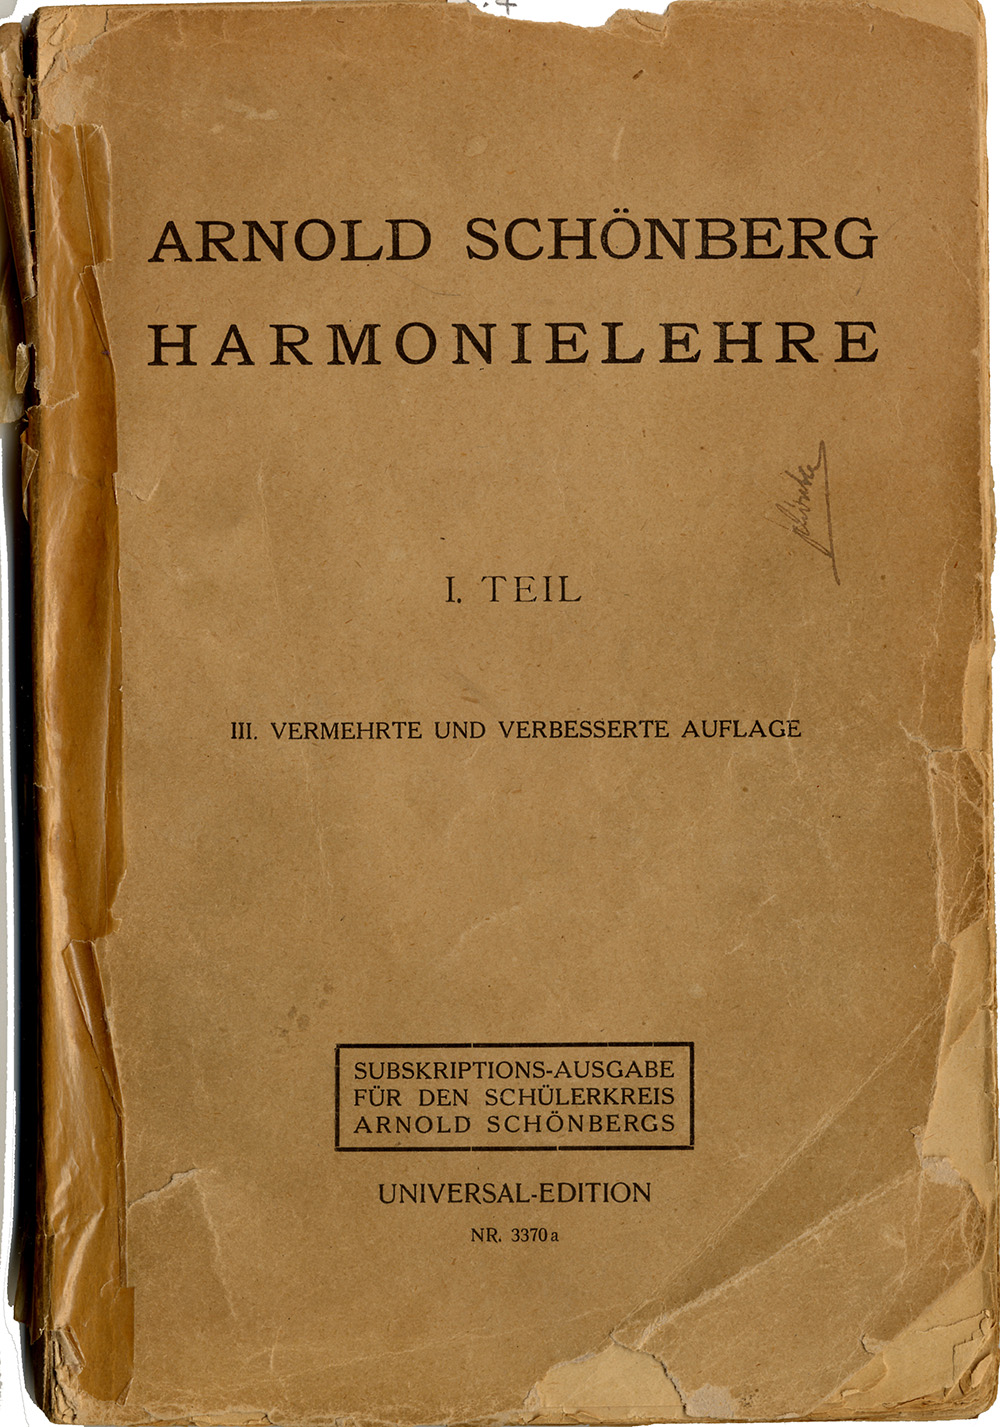 Arnold Schönberg: Harmonielehre, Titelblatt